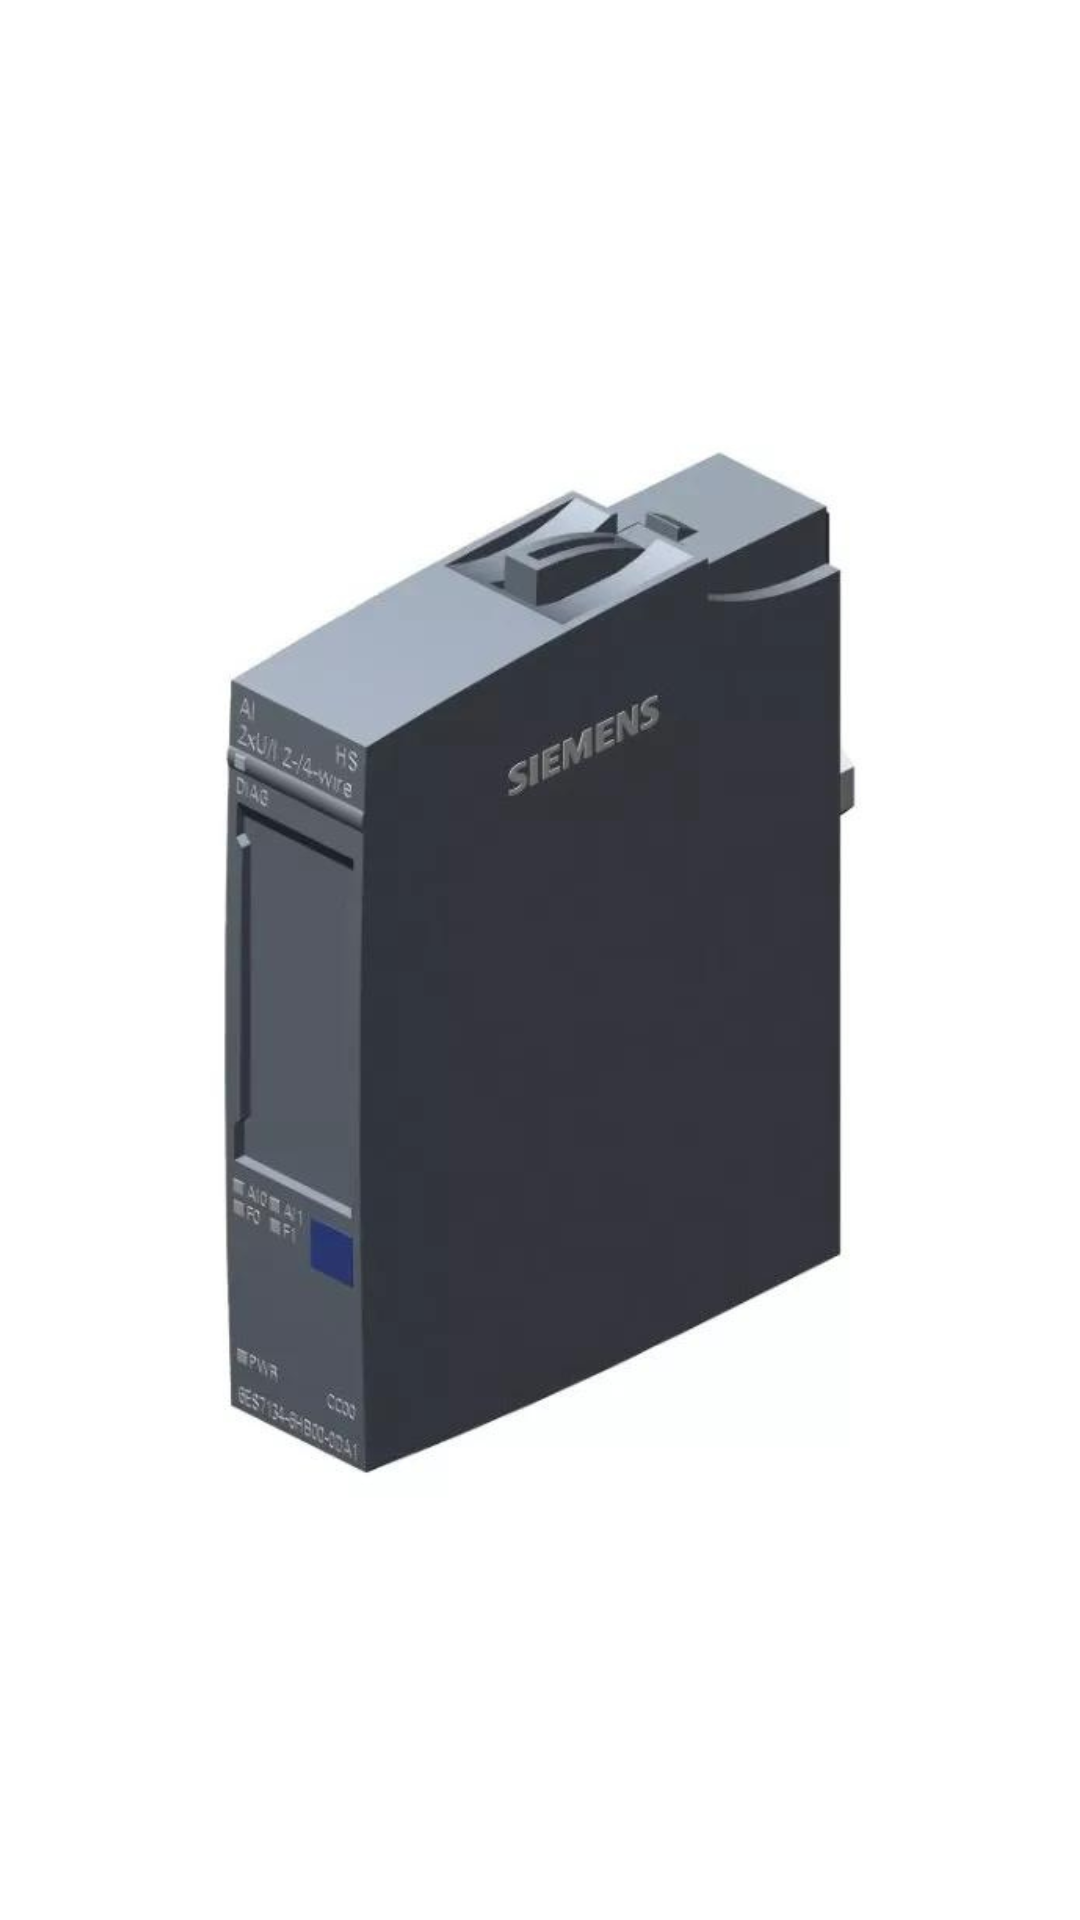 6ES7134-6HB00-0DA1 Siemens SIMATIC ET 200SP, Analog input module, AI 2x U/I 2-.4-wire High Speed, suitable for BU type A0, A1, Color code CC00, channel diagnostics, 16 bit, +/-0.3%